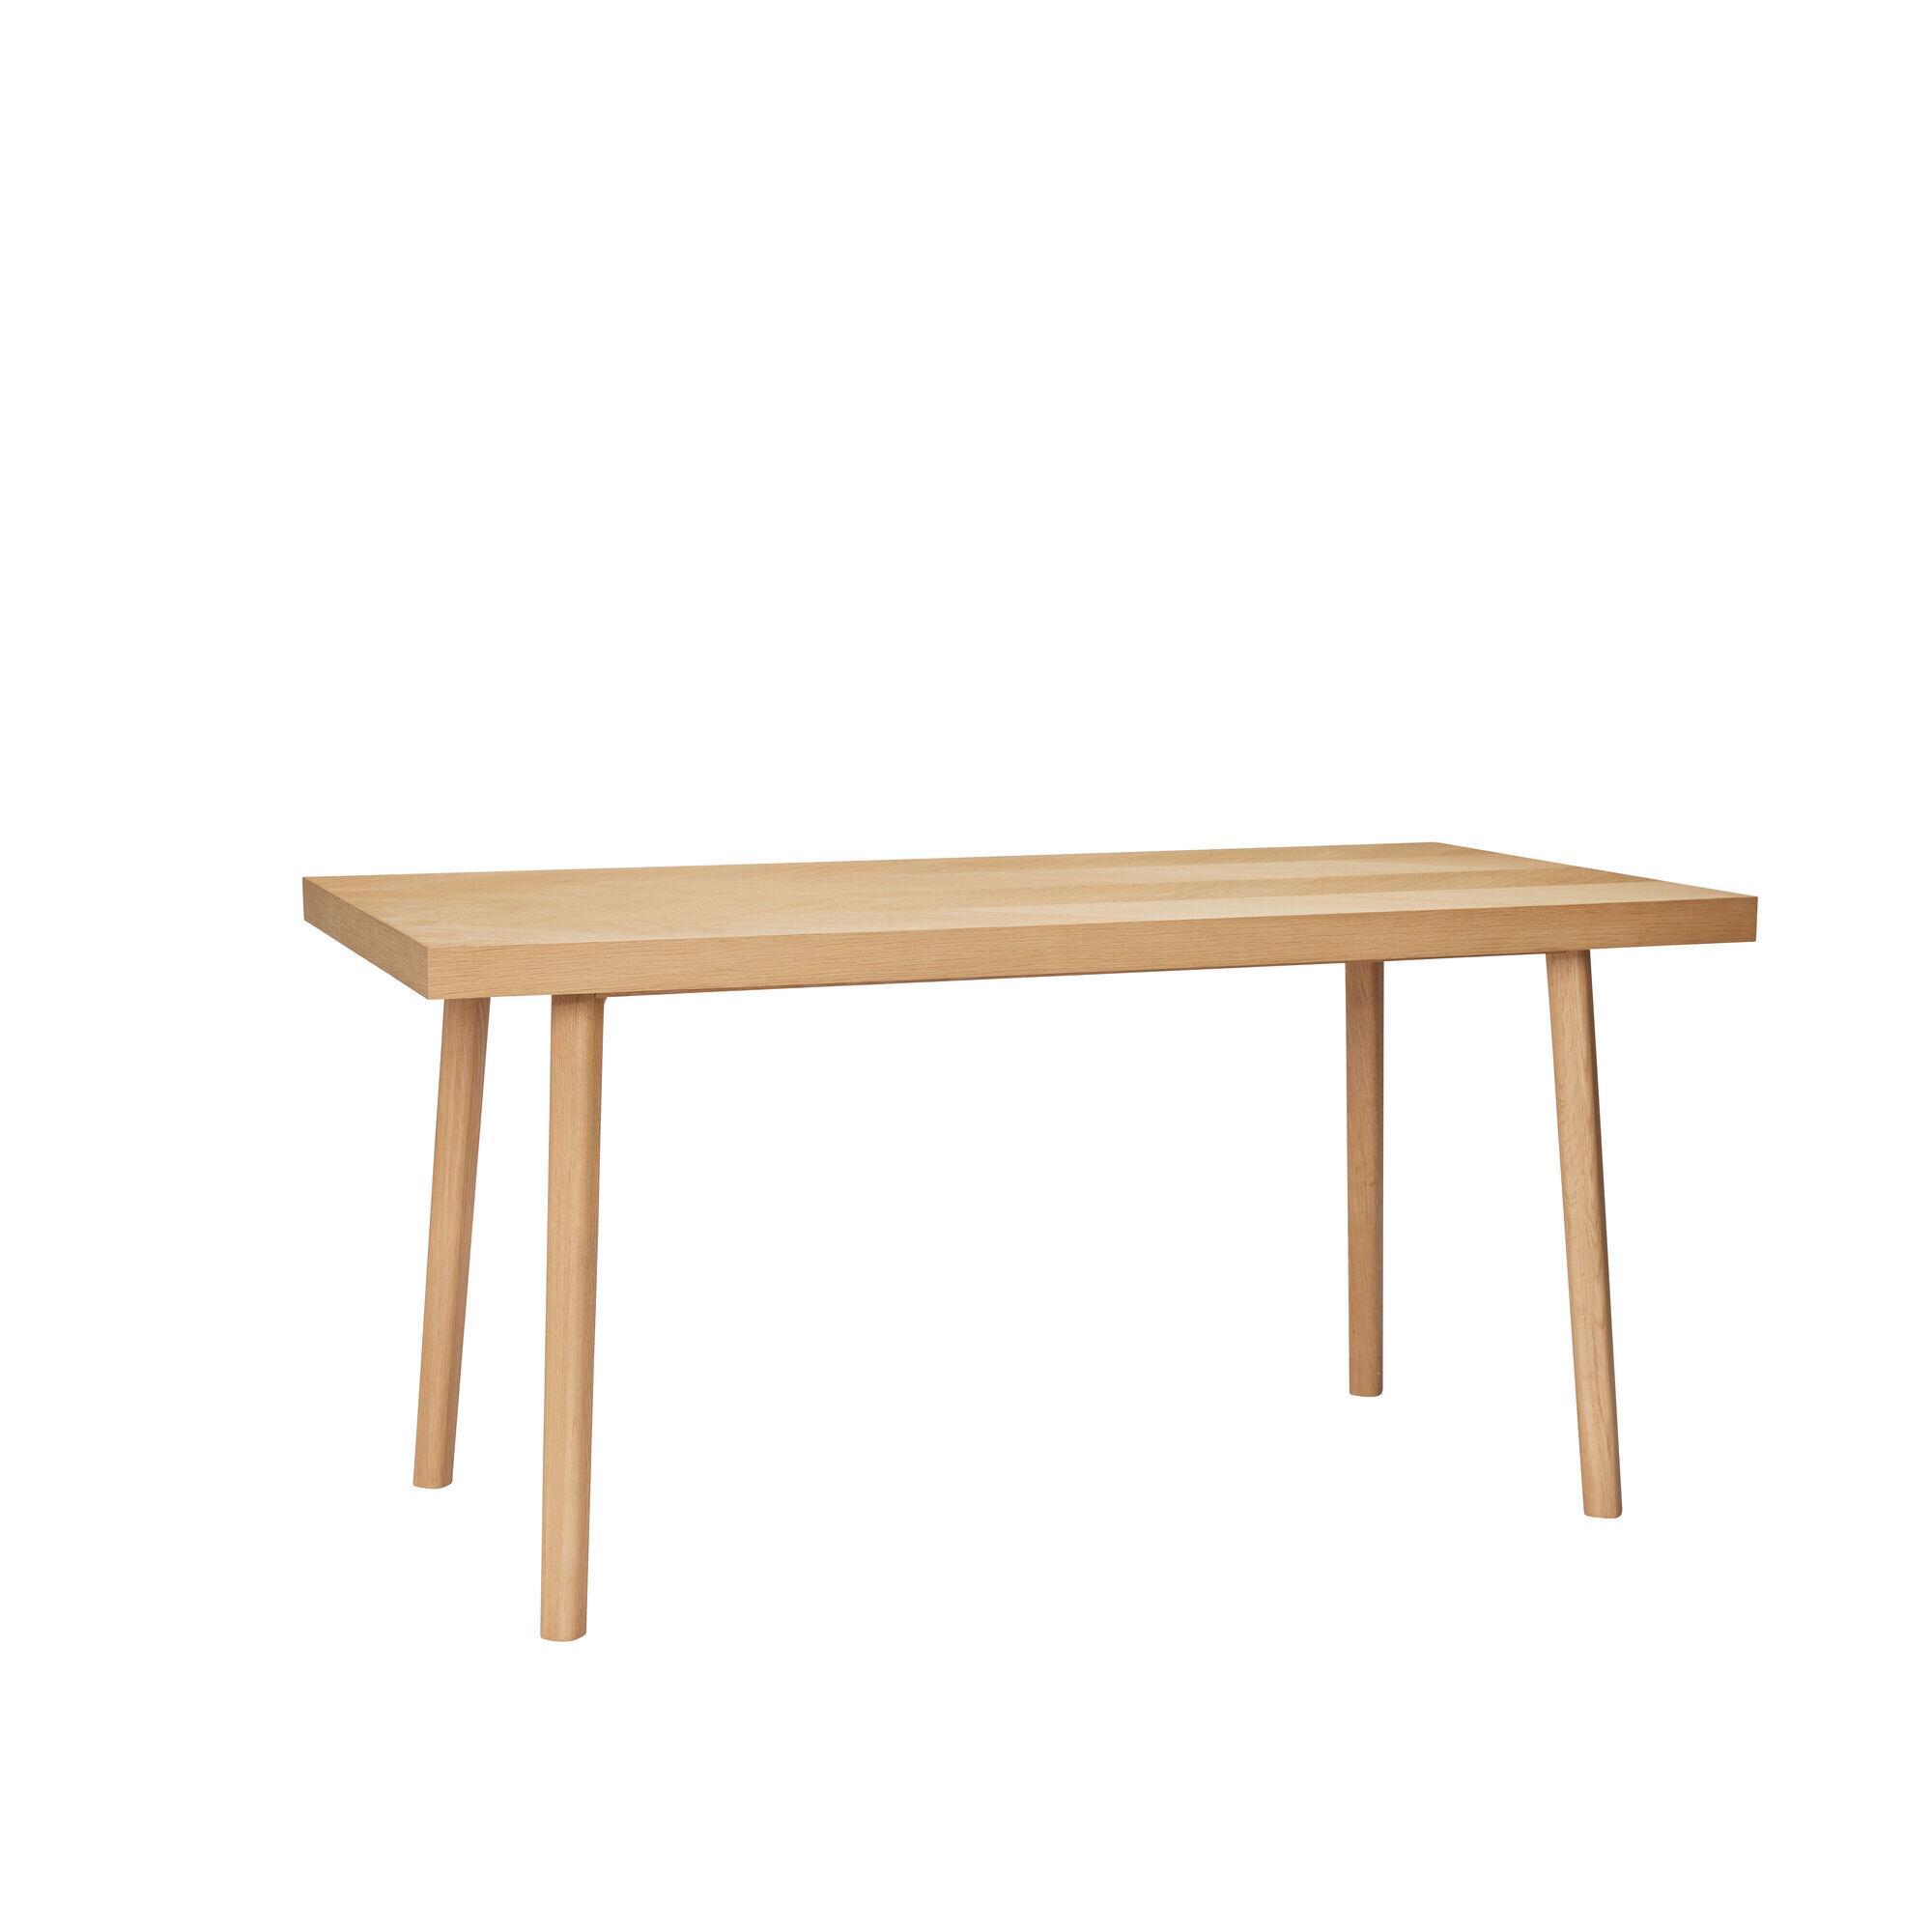  Herringbone Spisebord Lille - Natur fra Hübsch Interiør i MDF, Egetræsfiner, Egetræ (Varenr: 881612)